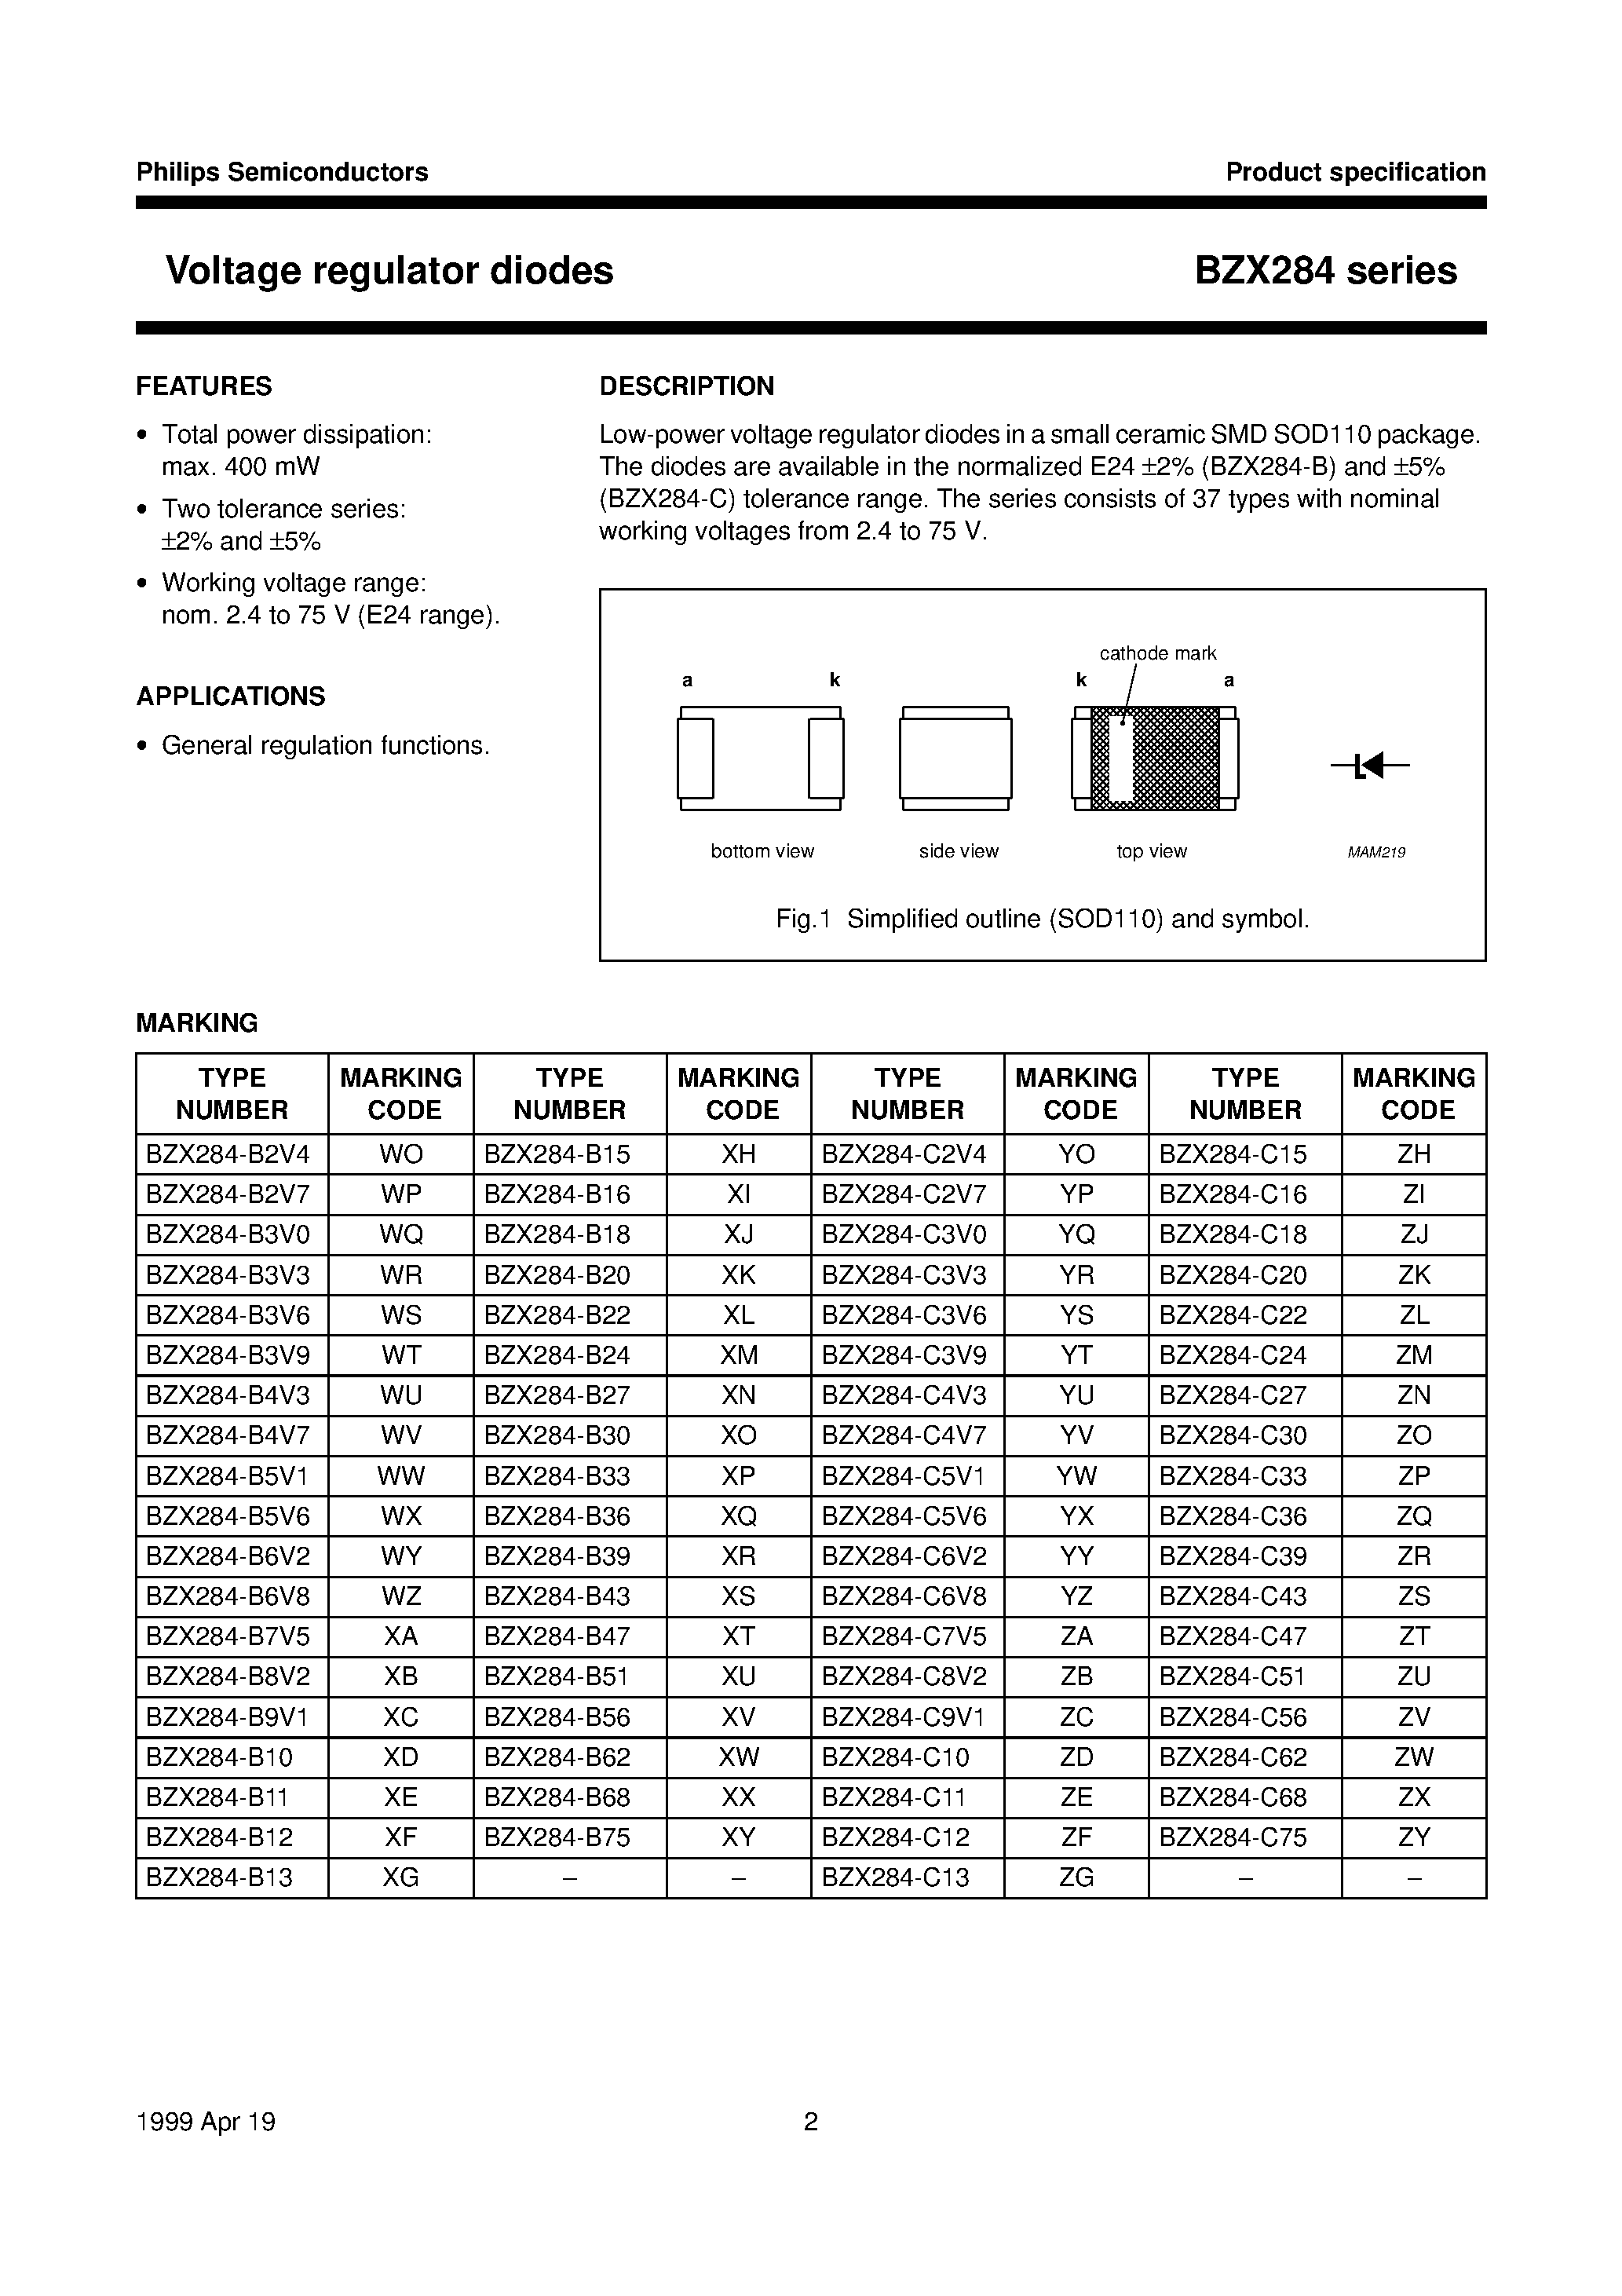 Datasheet BZX284-B51 - Voltage regulator diodes page 2